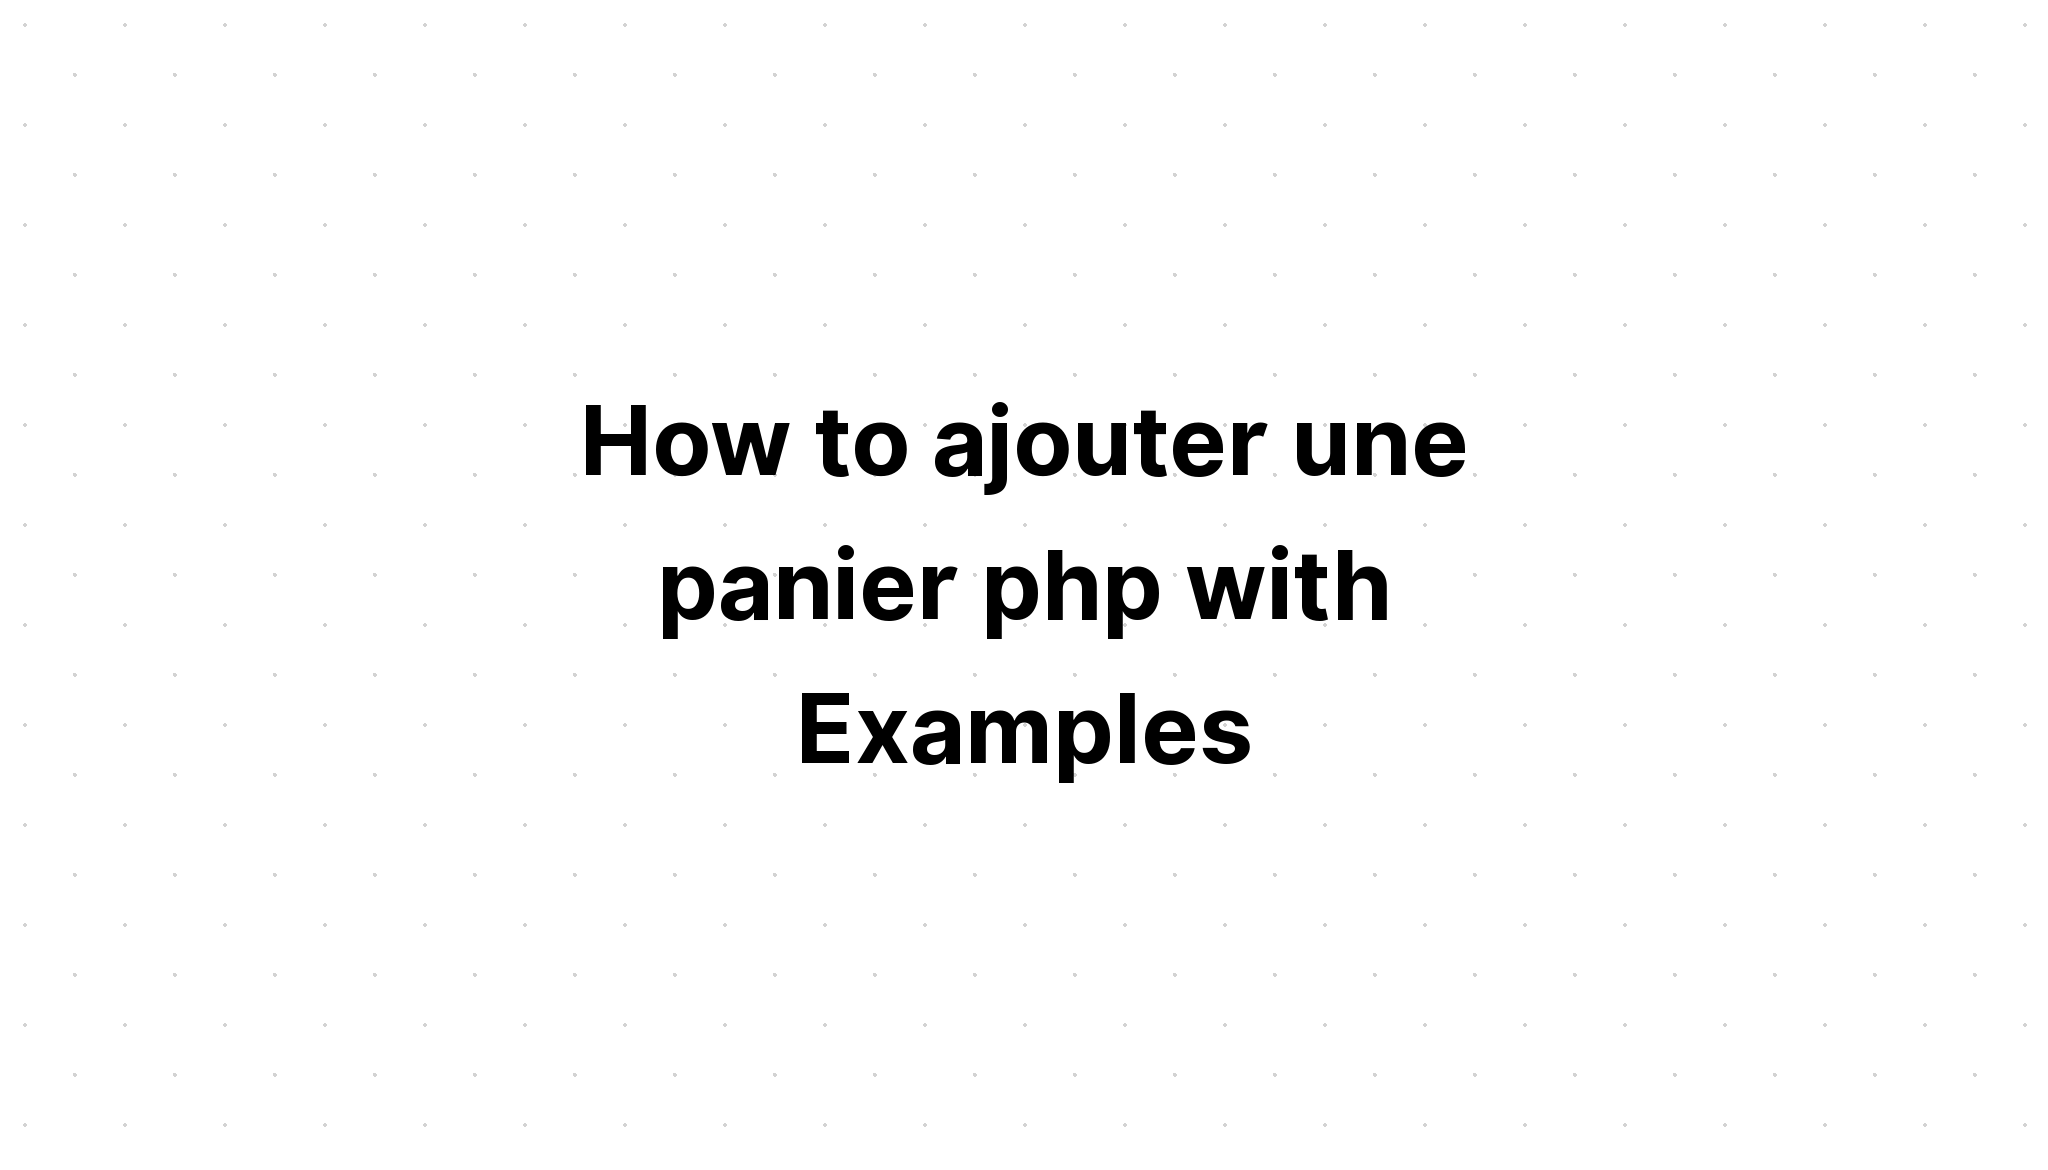 Bagaimana cara menambahkan une panier php dengan Contoh